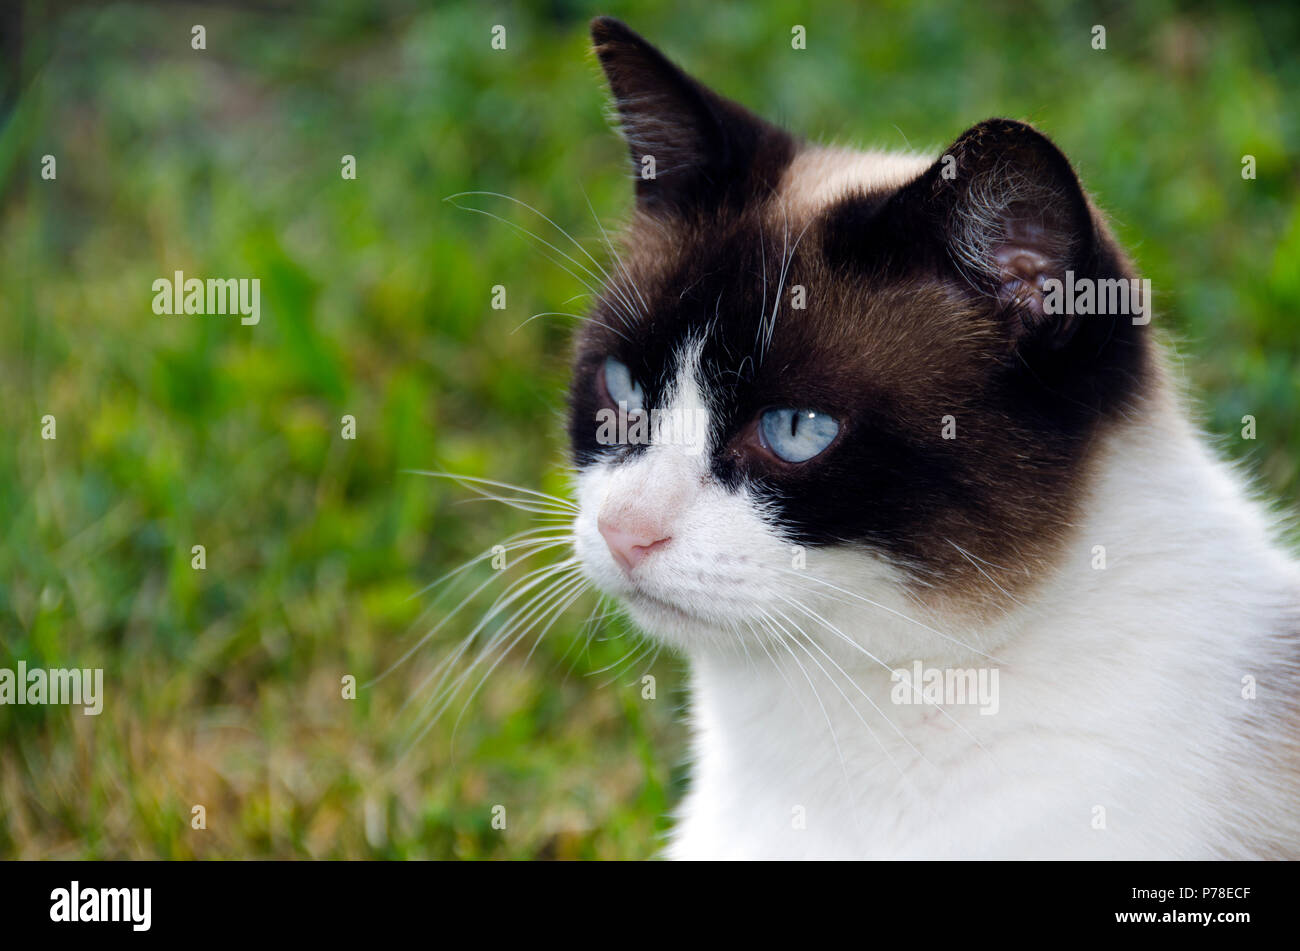 Les yeux bleus de chat, portrait, debout dans l'herbe, de fourrure noire et blanche Banque D'Images